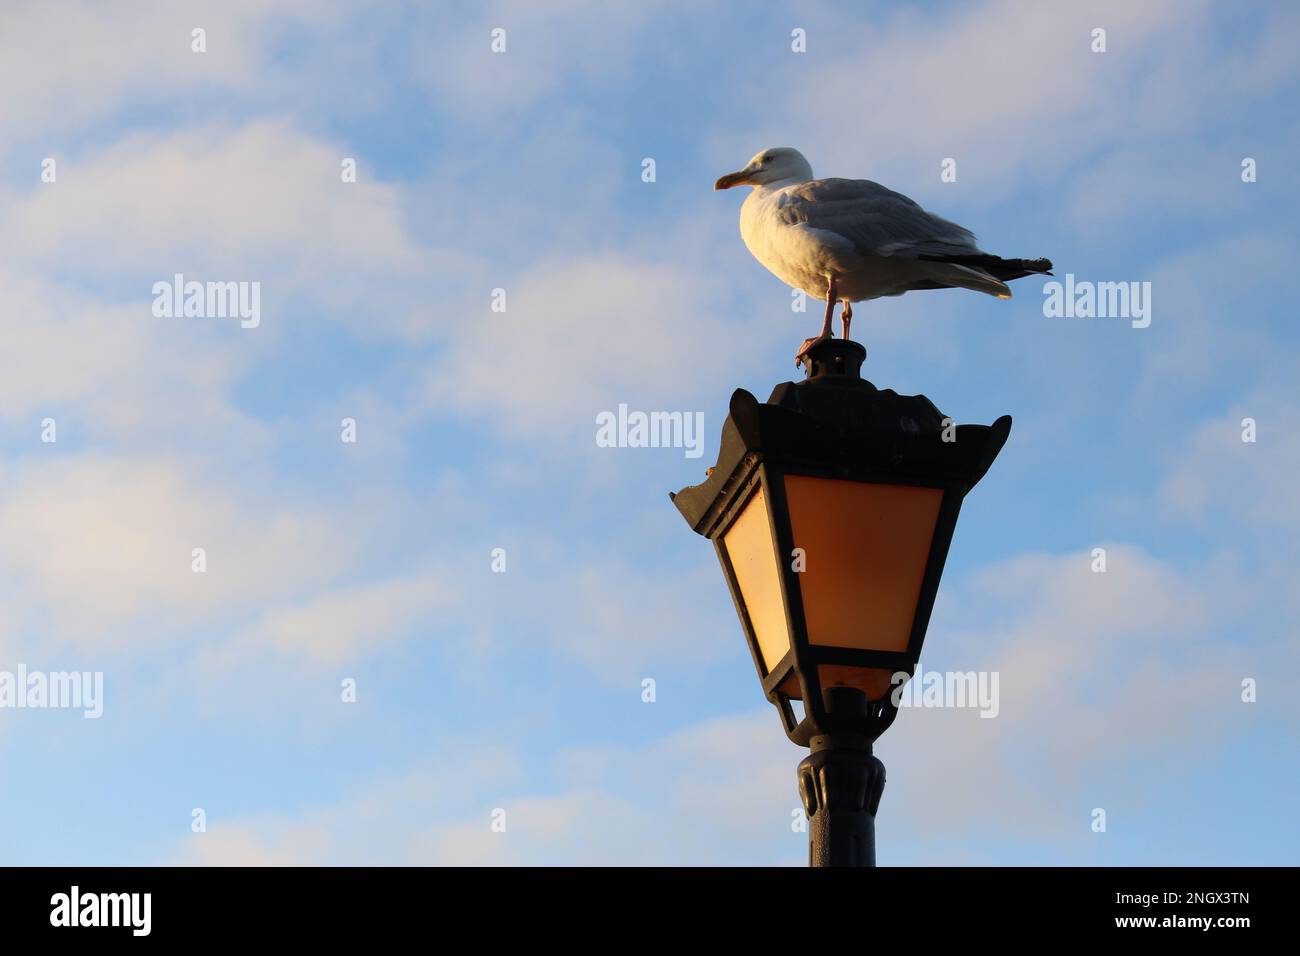 Mouette adulte perchée au sommet d'un ancien lampadaire noir à l'heure d'or, isolée contre un ciel bleu avec des nuages blancs plus sages St. Ives, Cornwall Banque D'Images